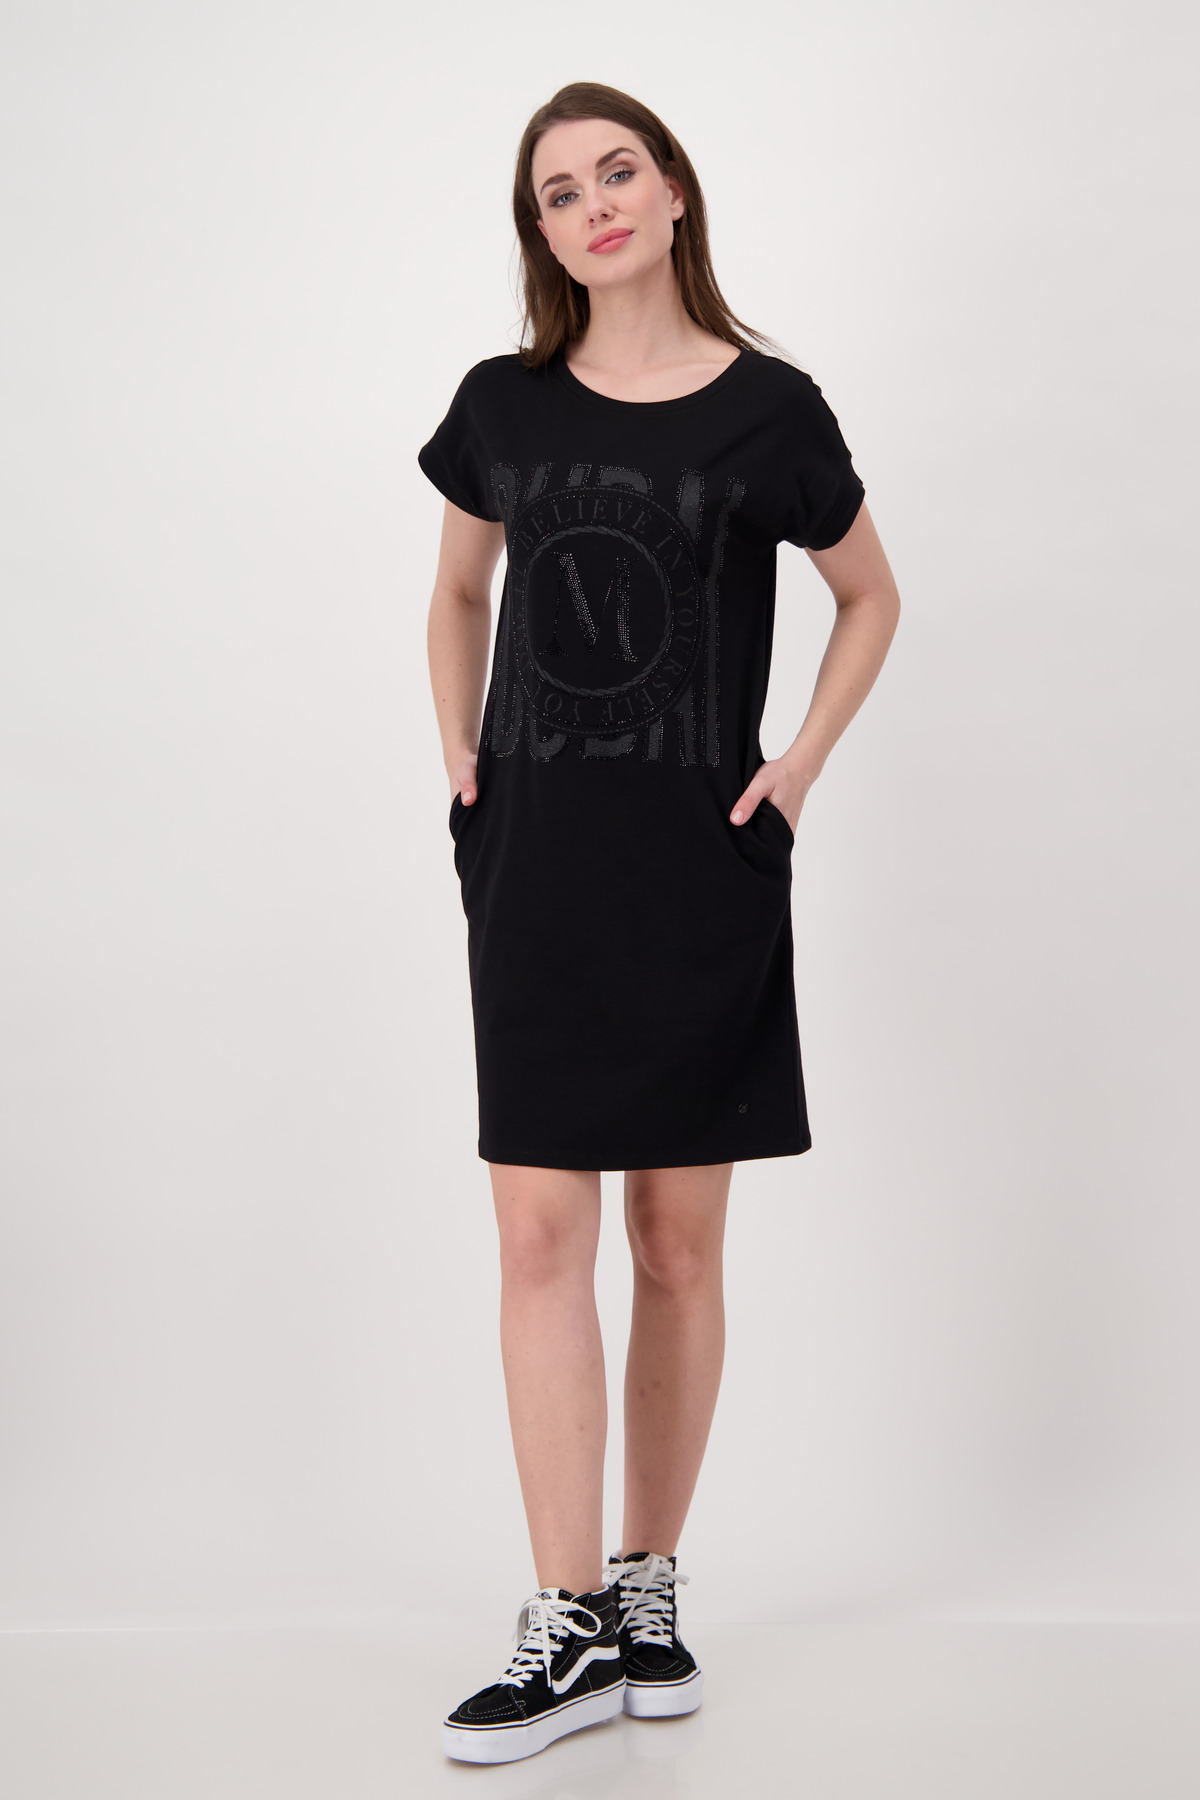 Monari Kleid, schwarz - Hartmann Mode Shop